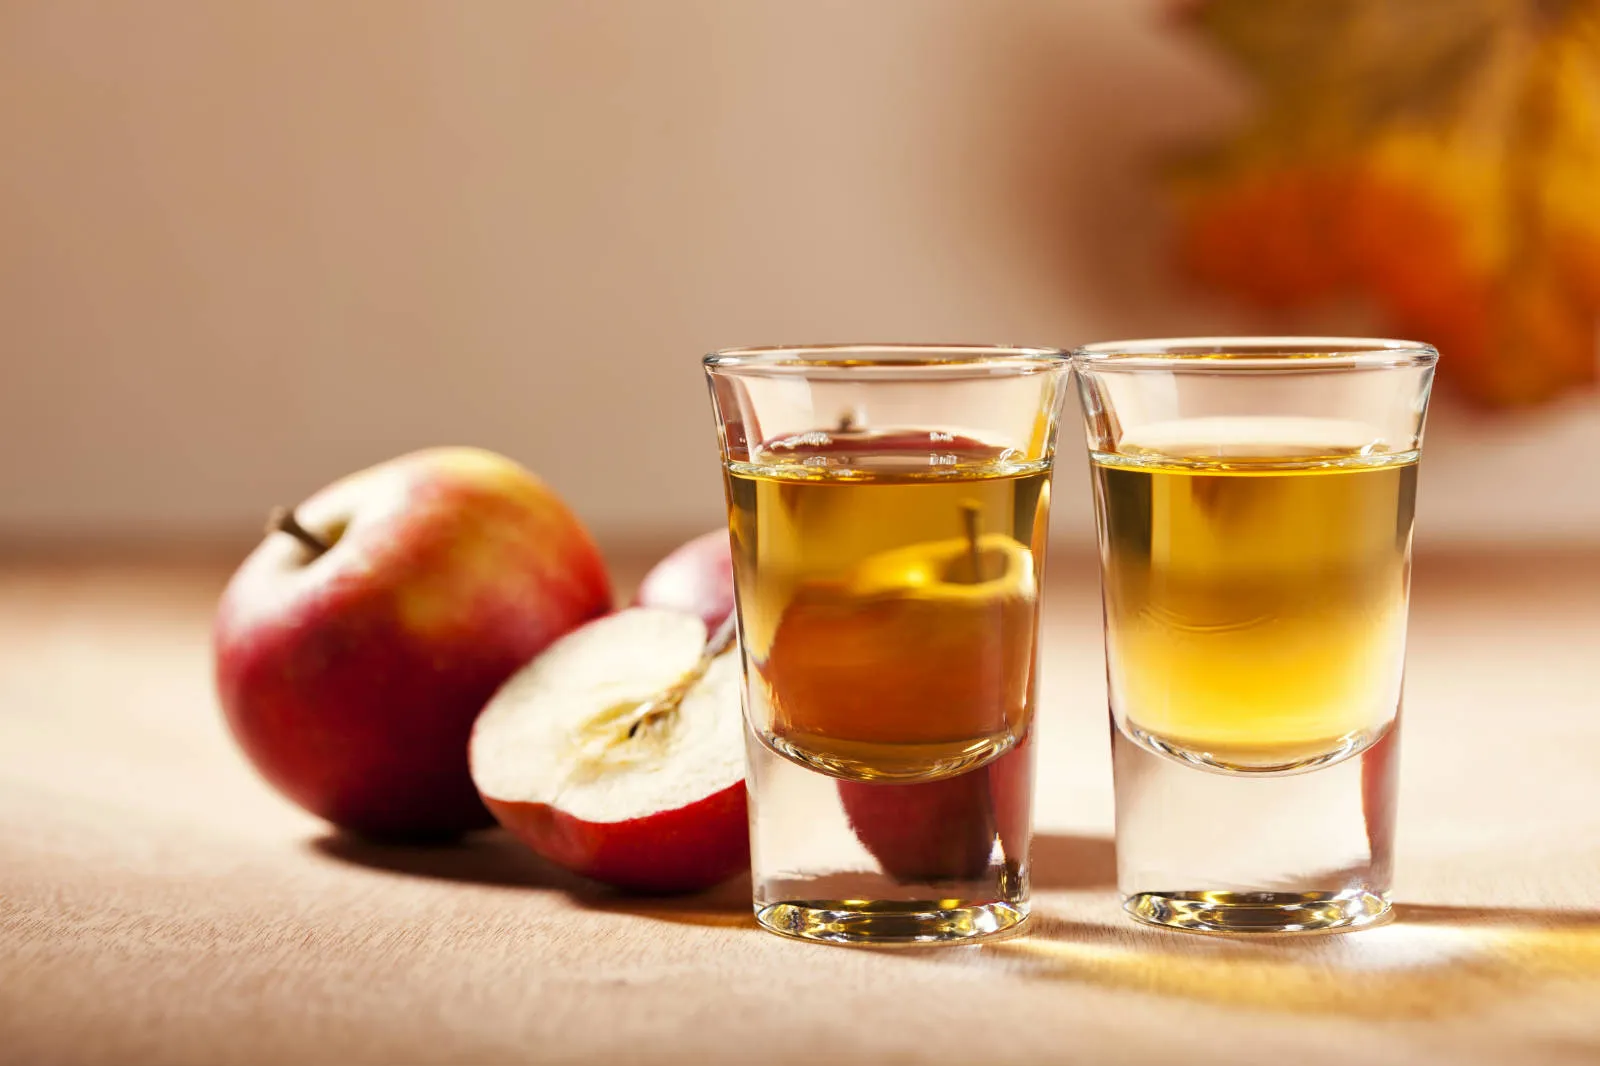 Inilah 5 Manfaat Terbaik dari Cuka Apel untuk Kulit Wajah